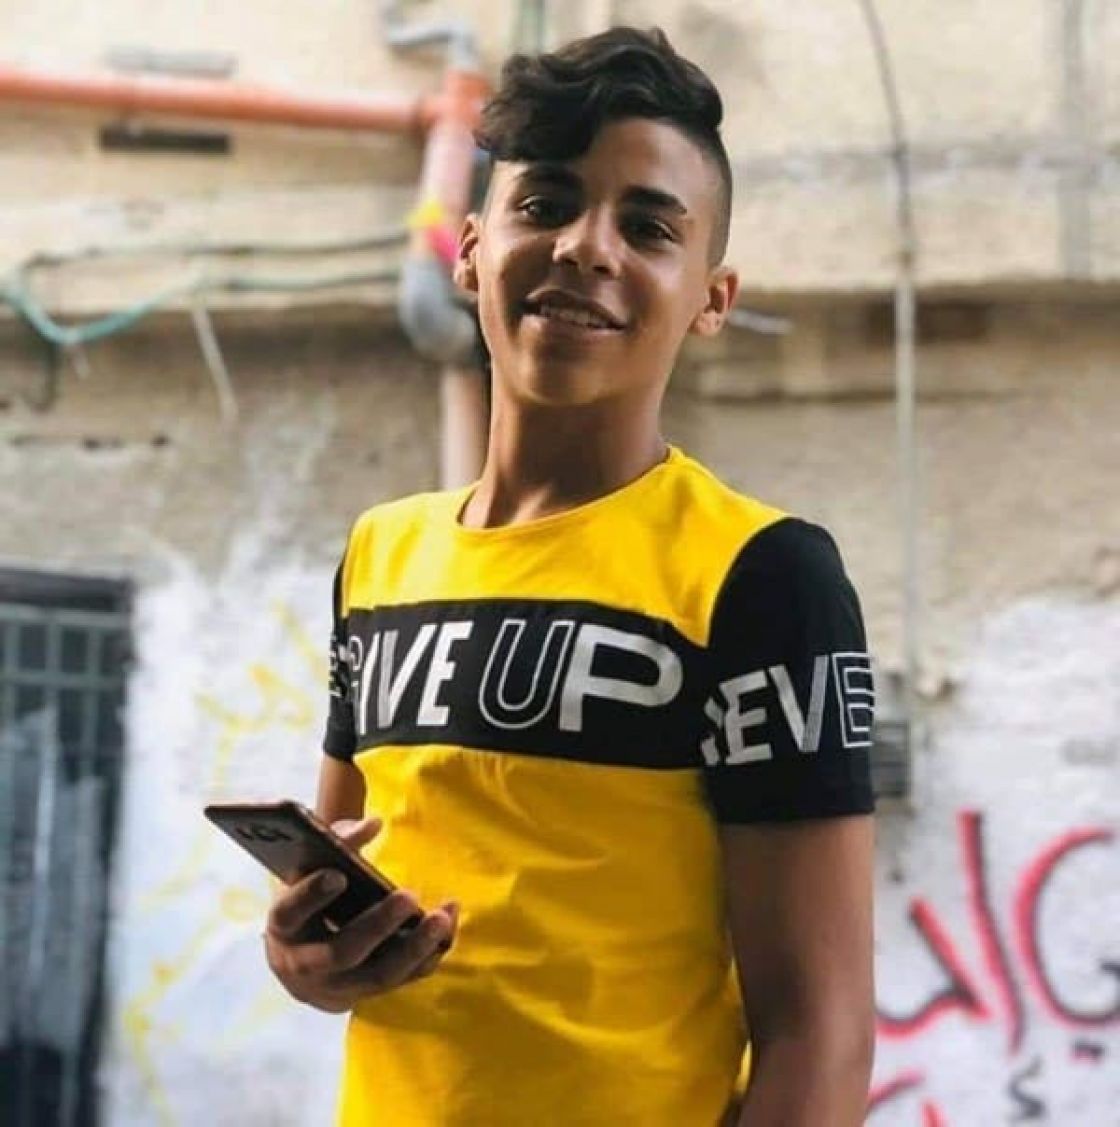 استشهاد فتى فلسطيني (16 عاماً) برصاص الاحتلال في مخيم بلاطة بنابلس